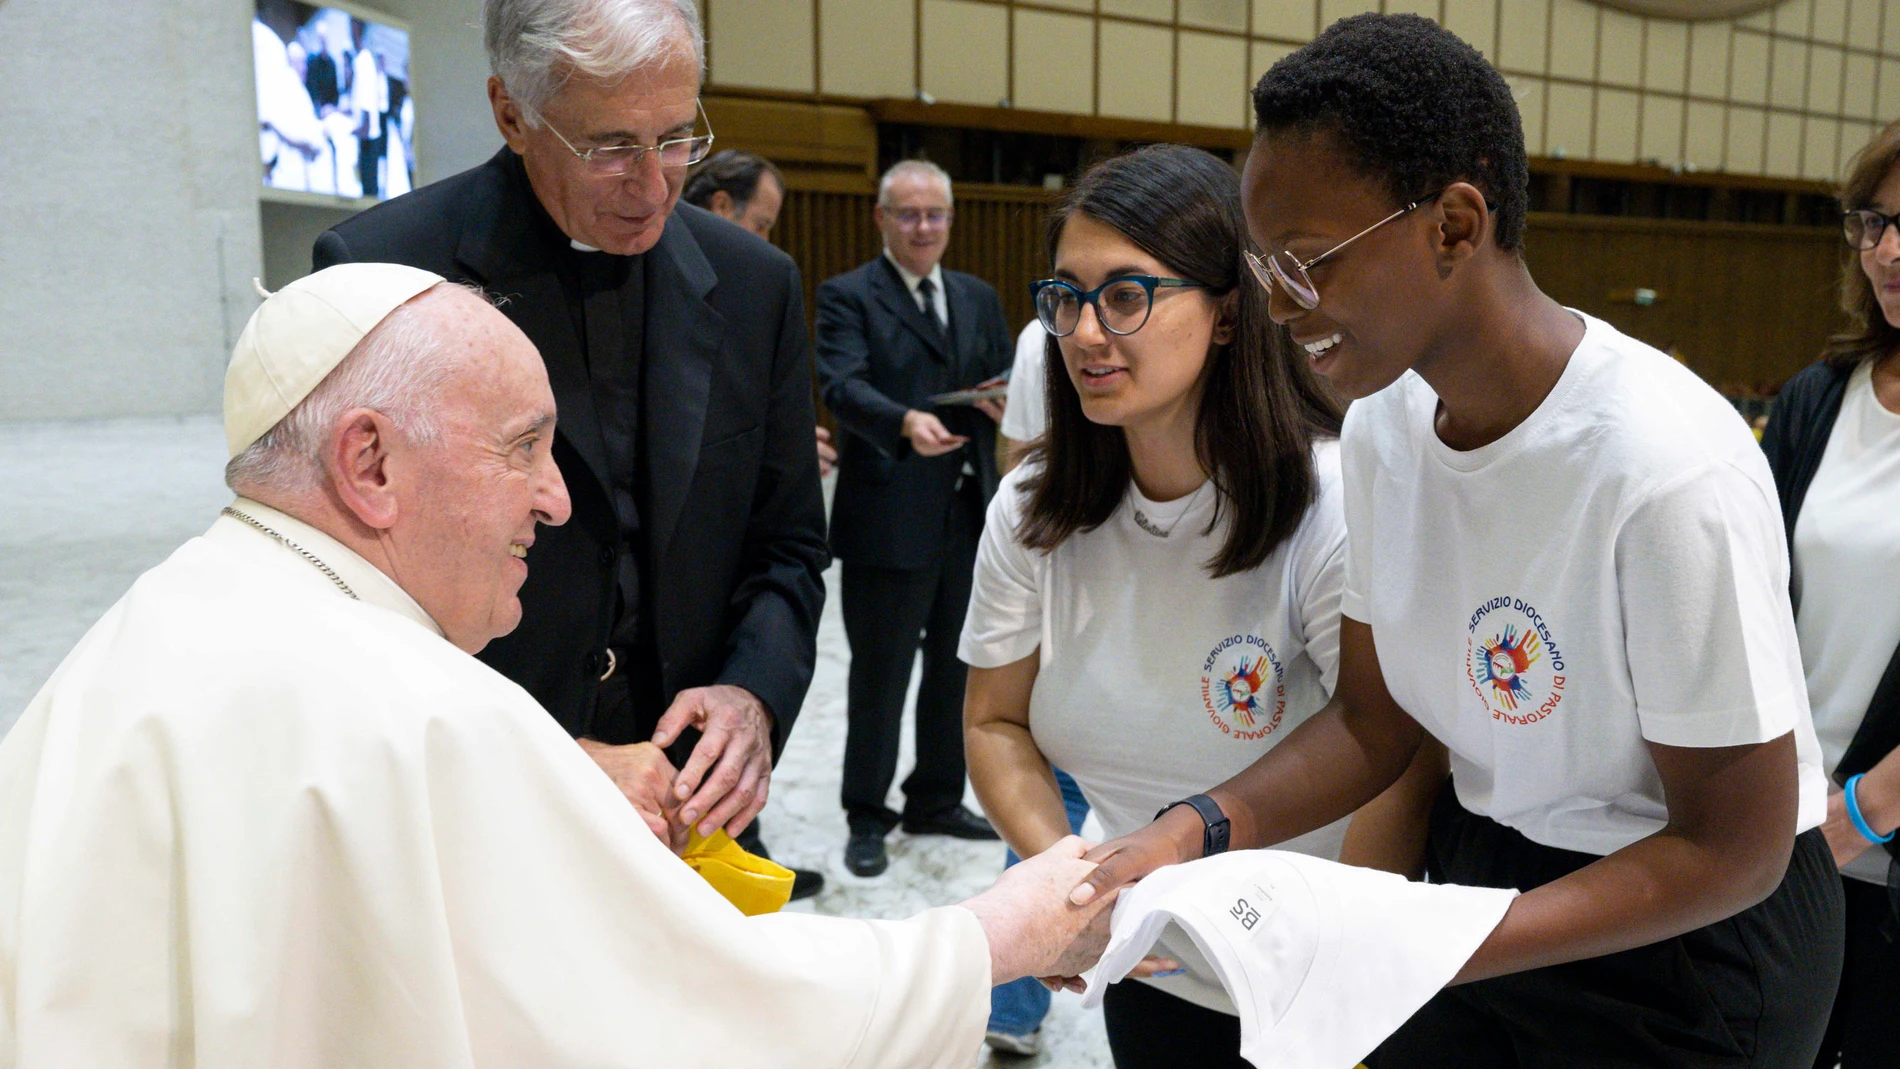 Encuentro del Papa con unos jóvenes en el Vaticano